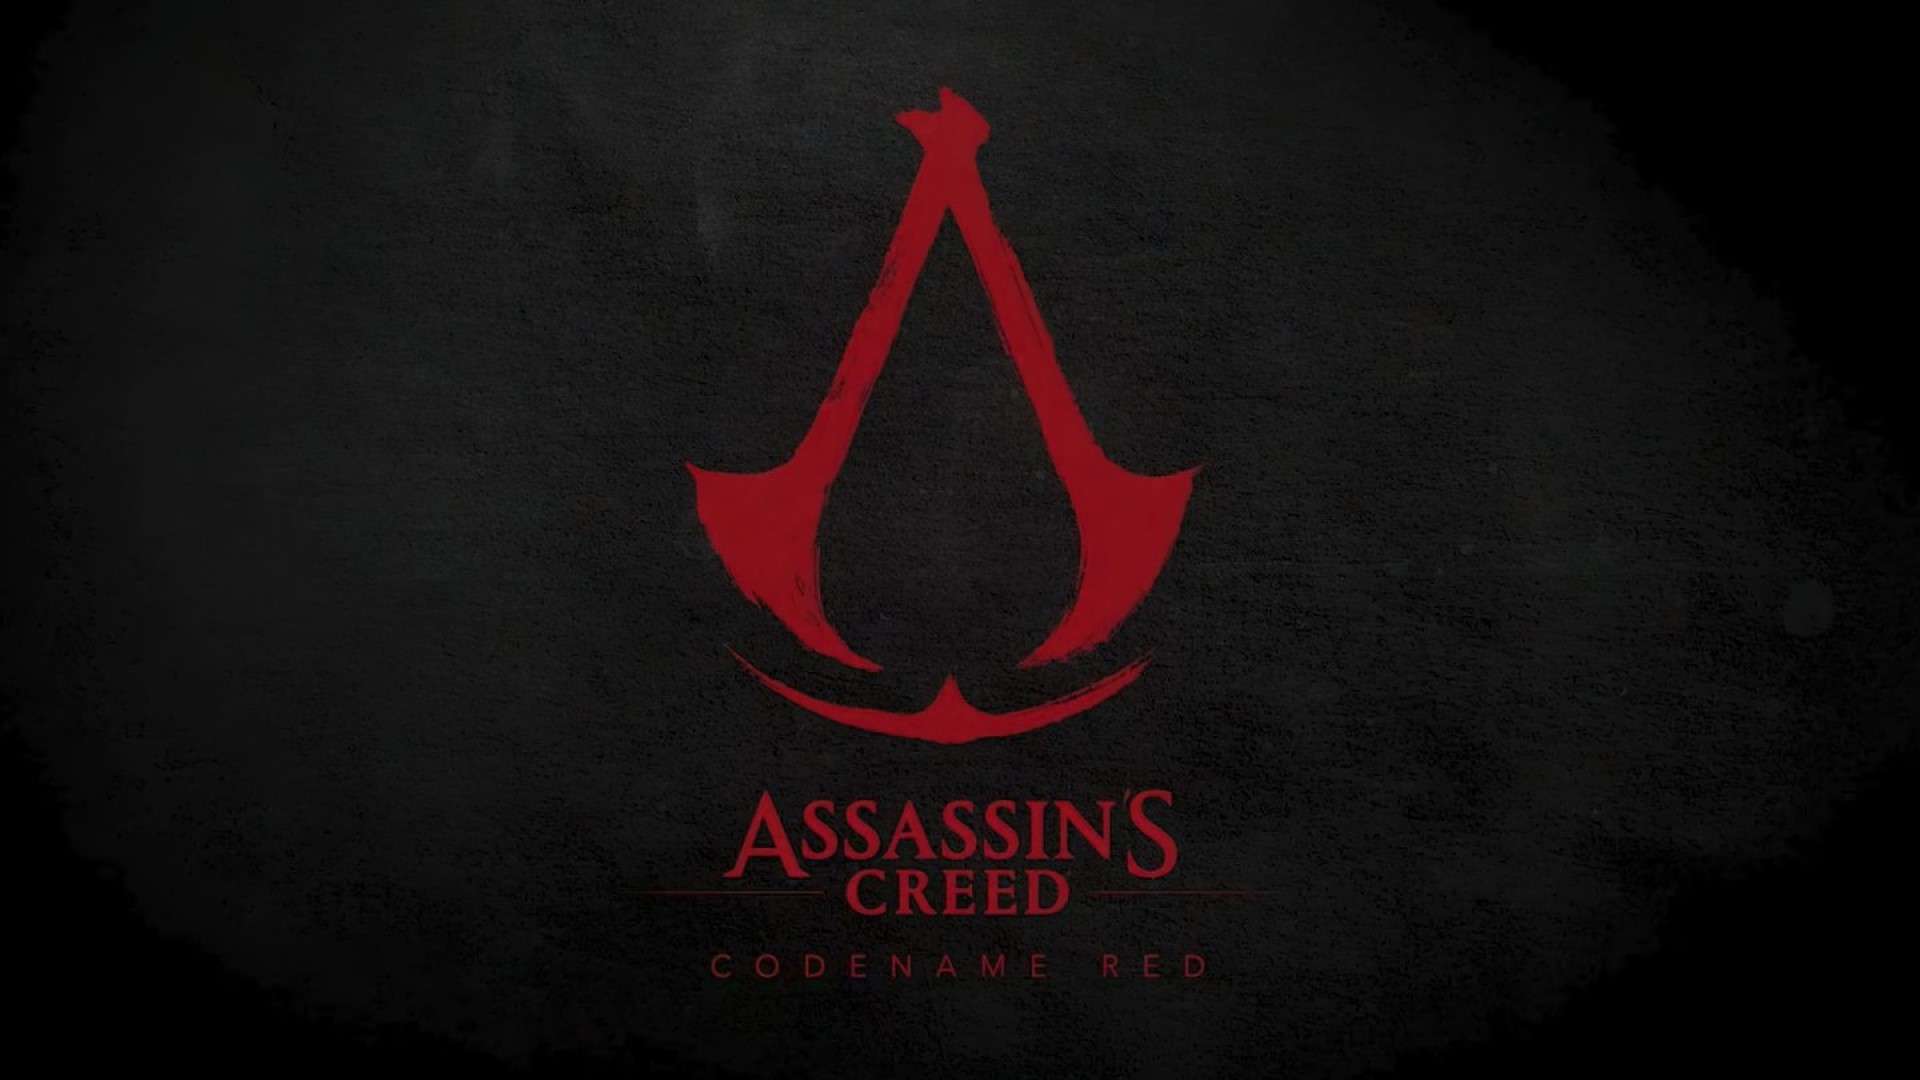 kódové označení assassin's creed červená